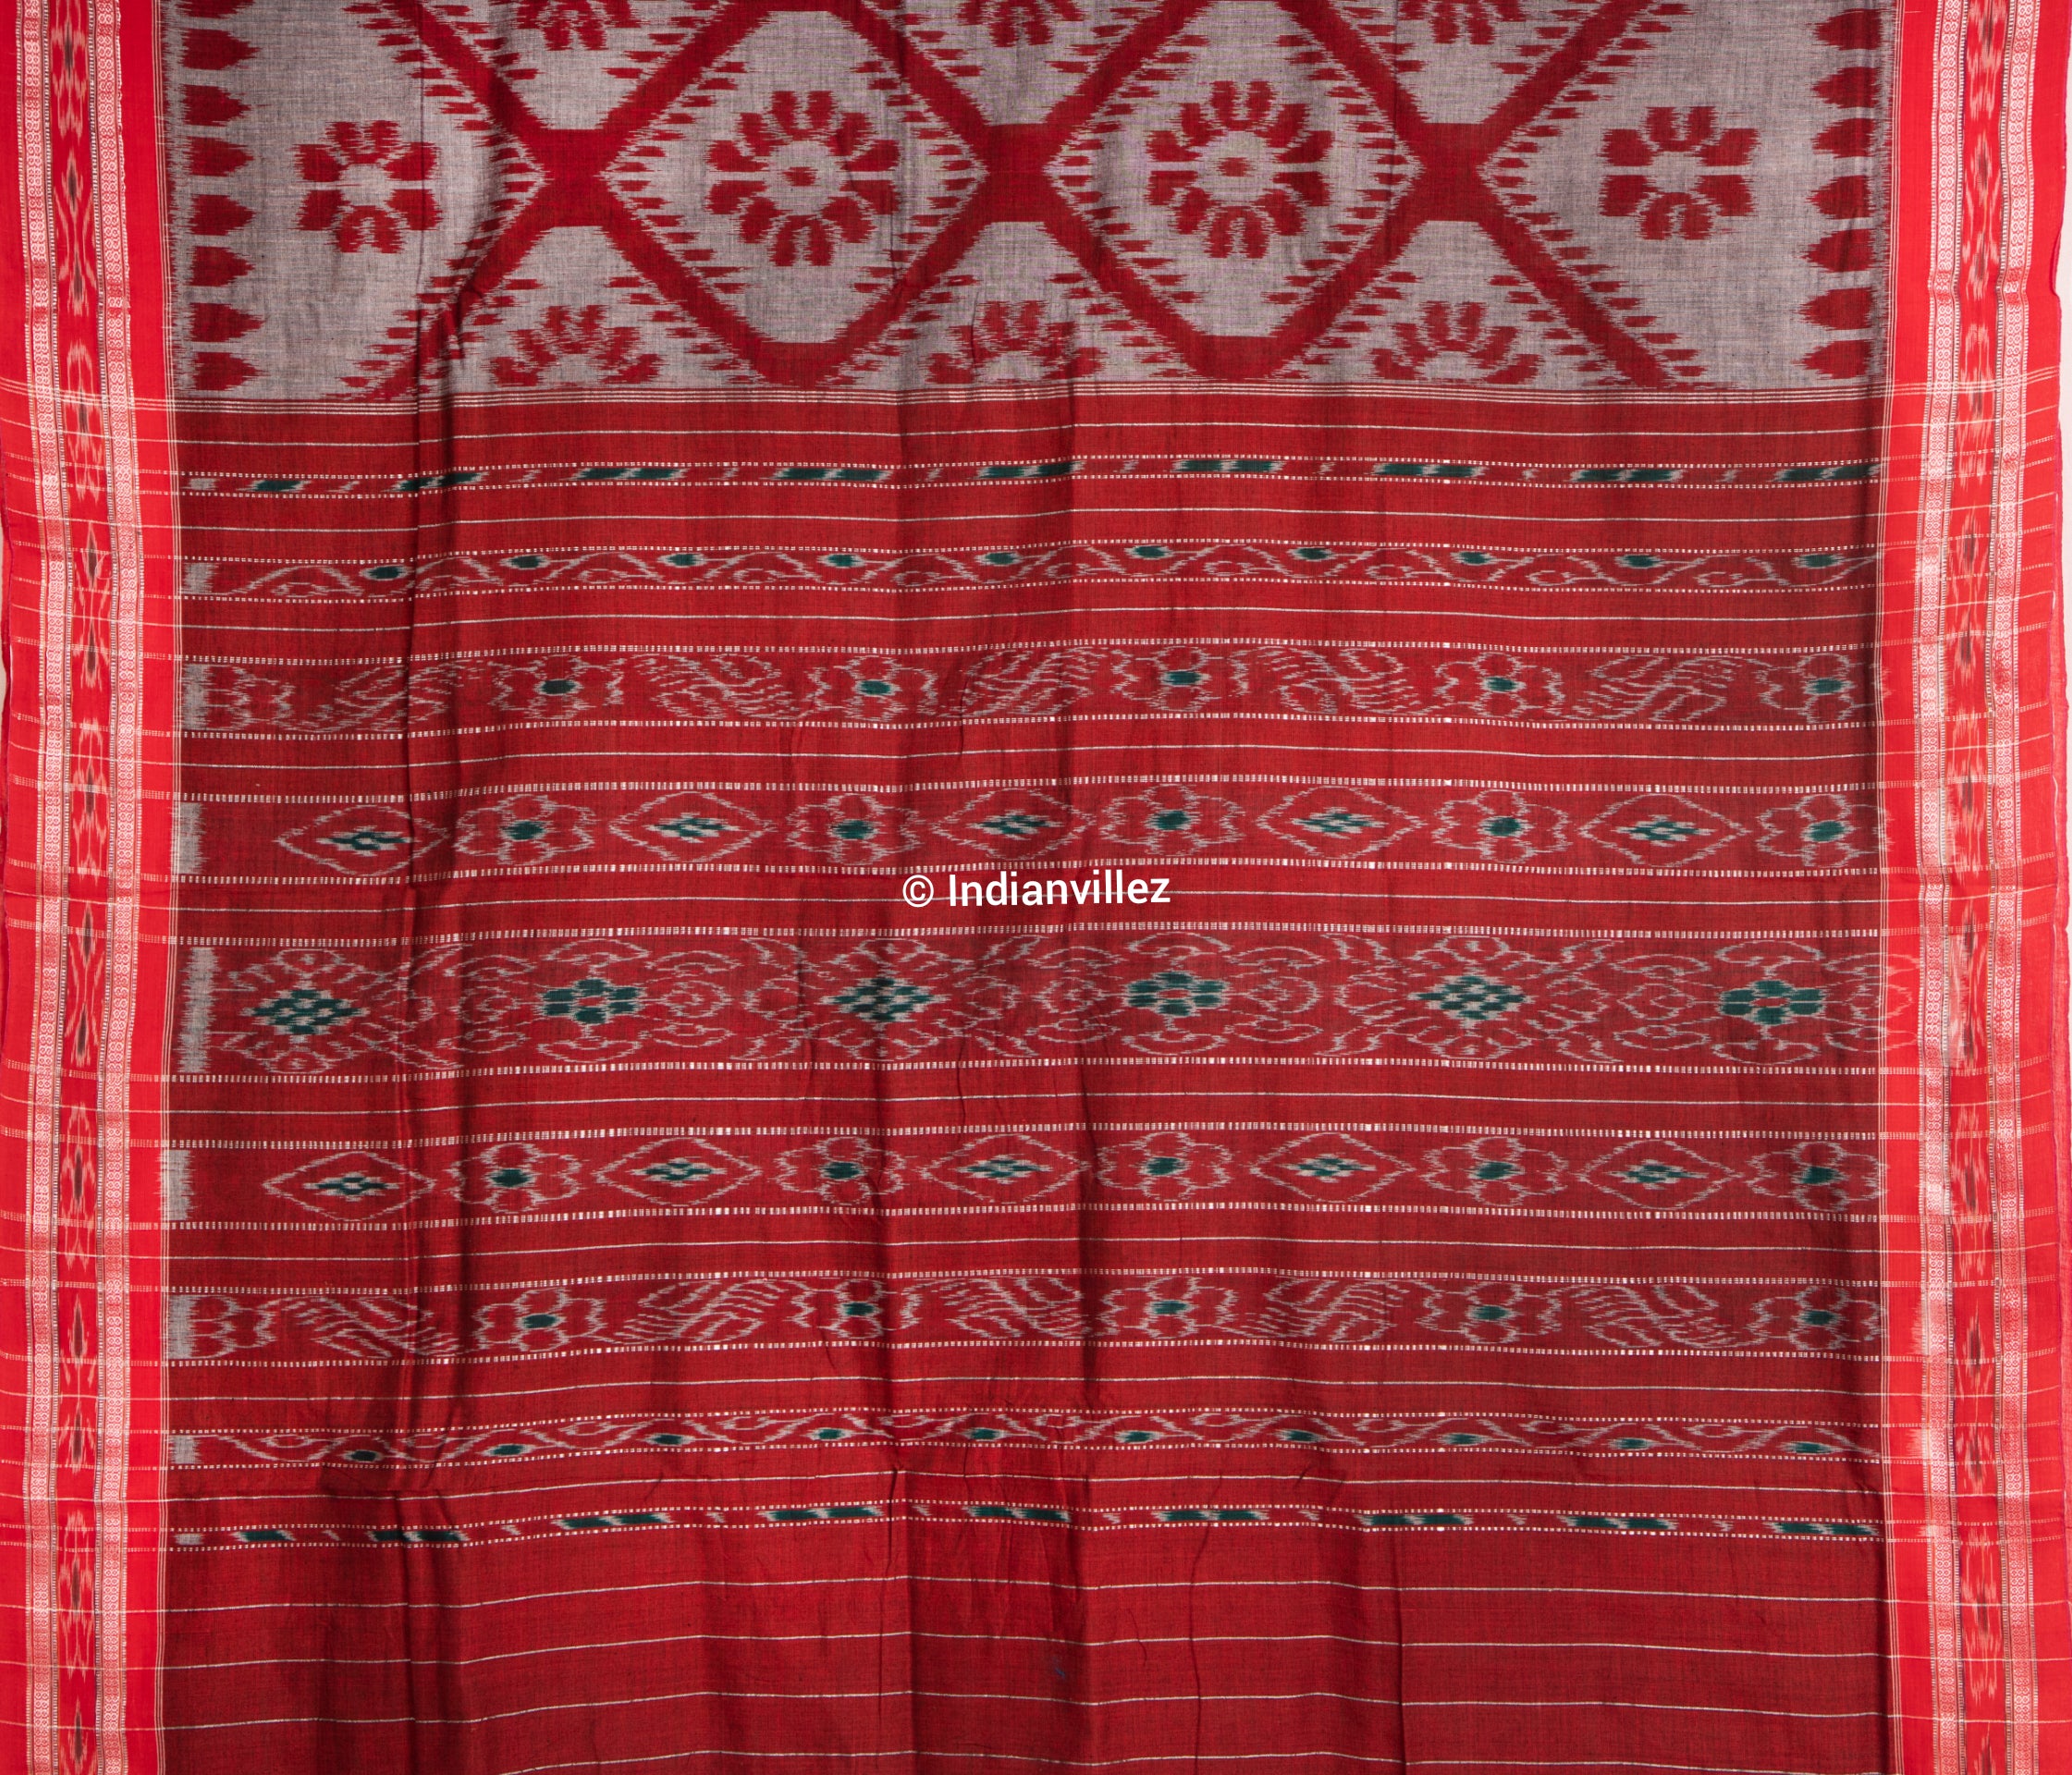 Grey Red Bada Fula ( Big Flower ) Odisha Ikat Handloom Cotton Saree